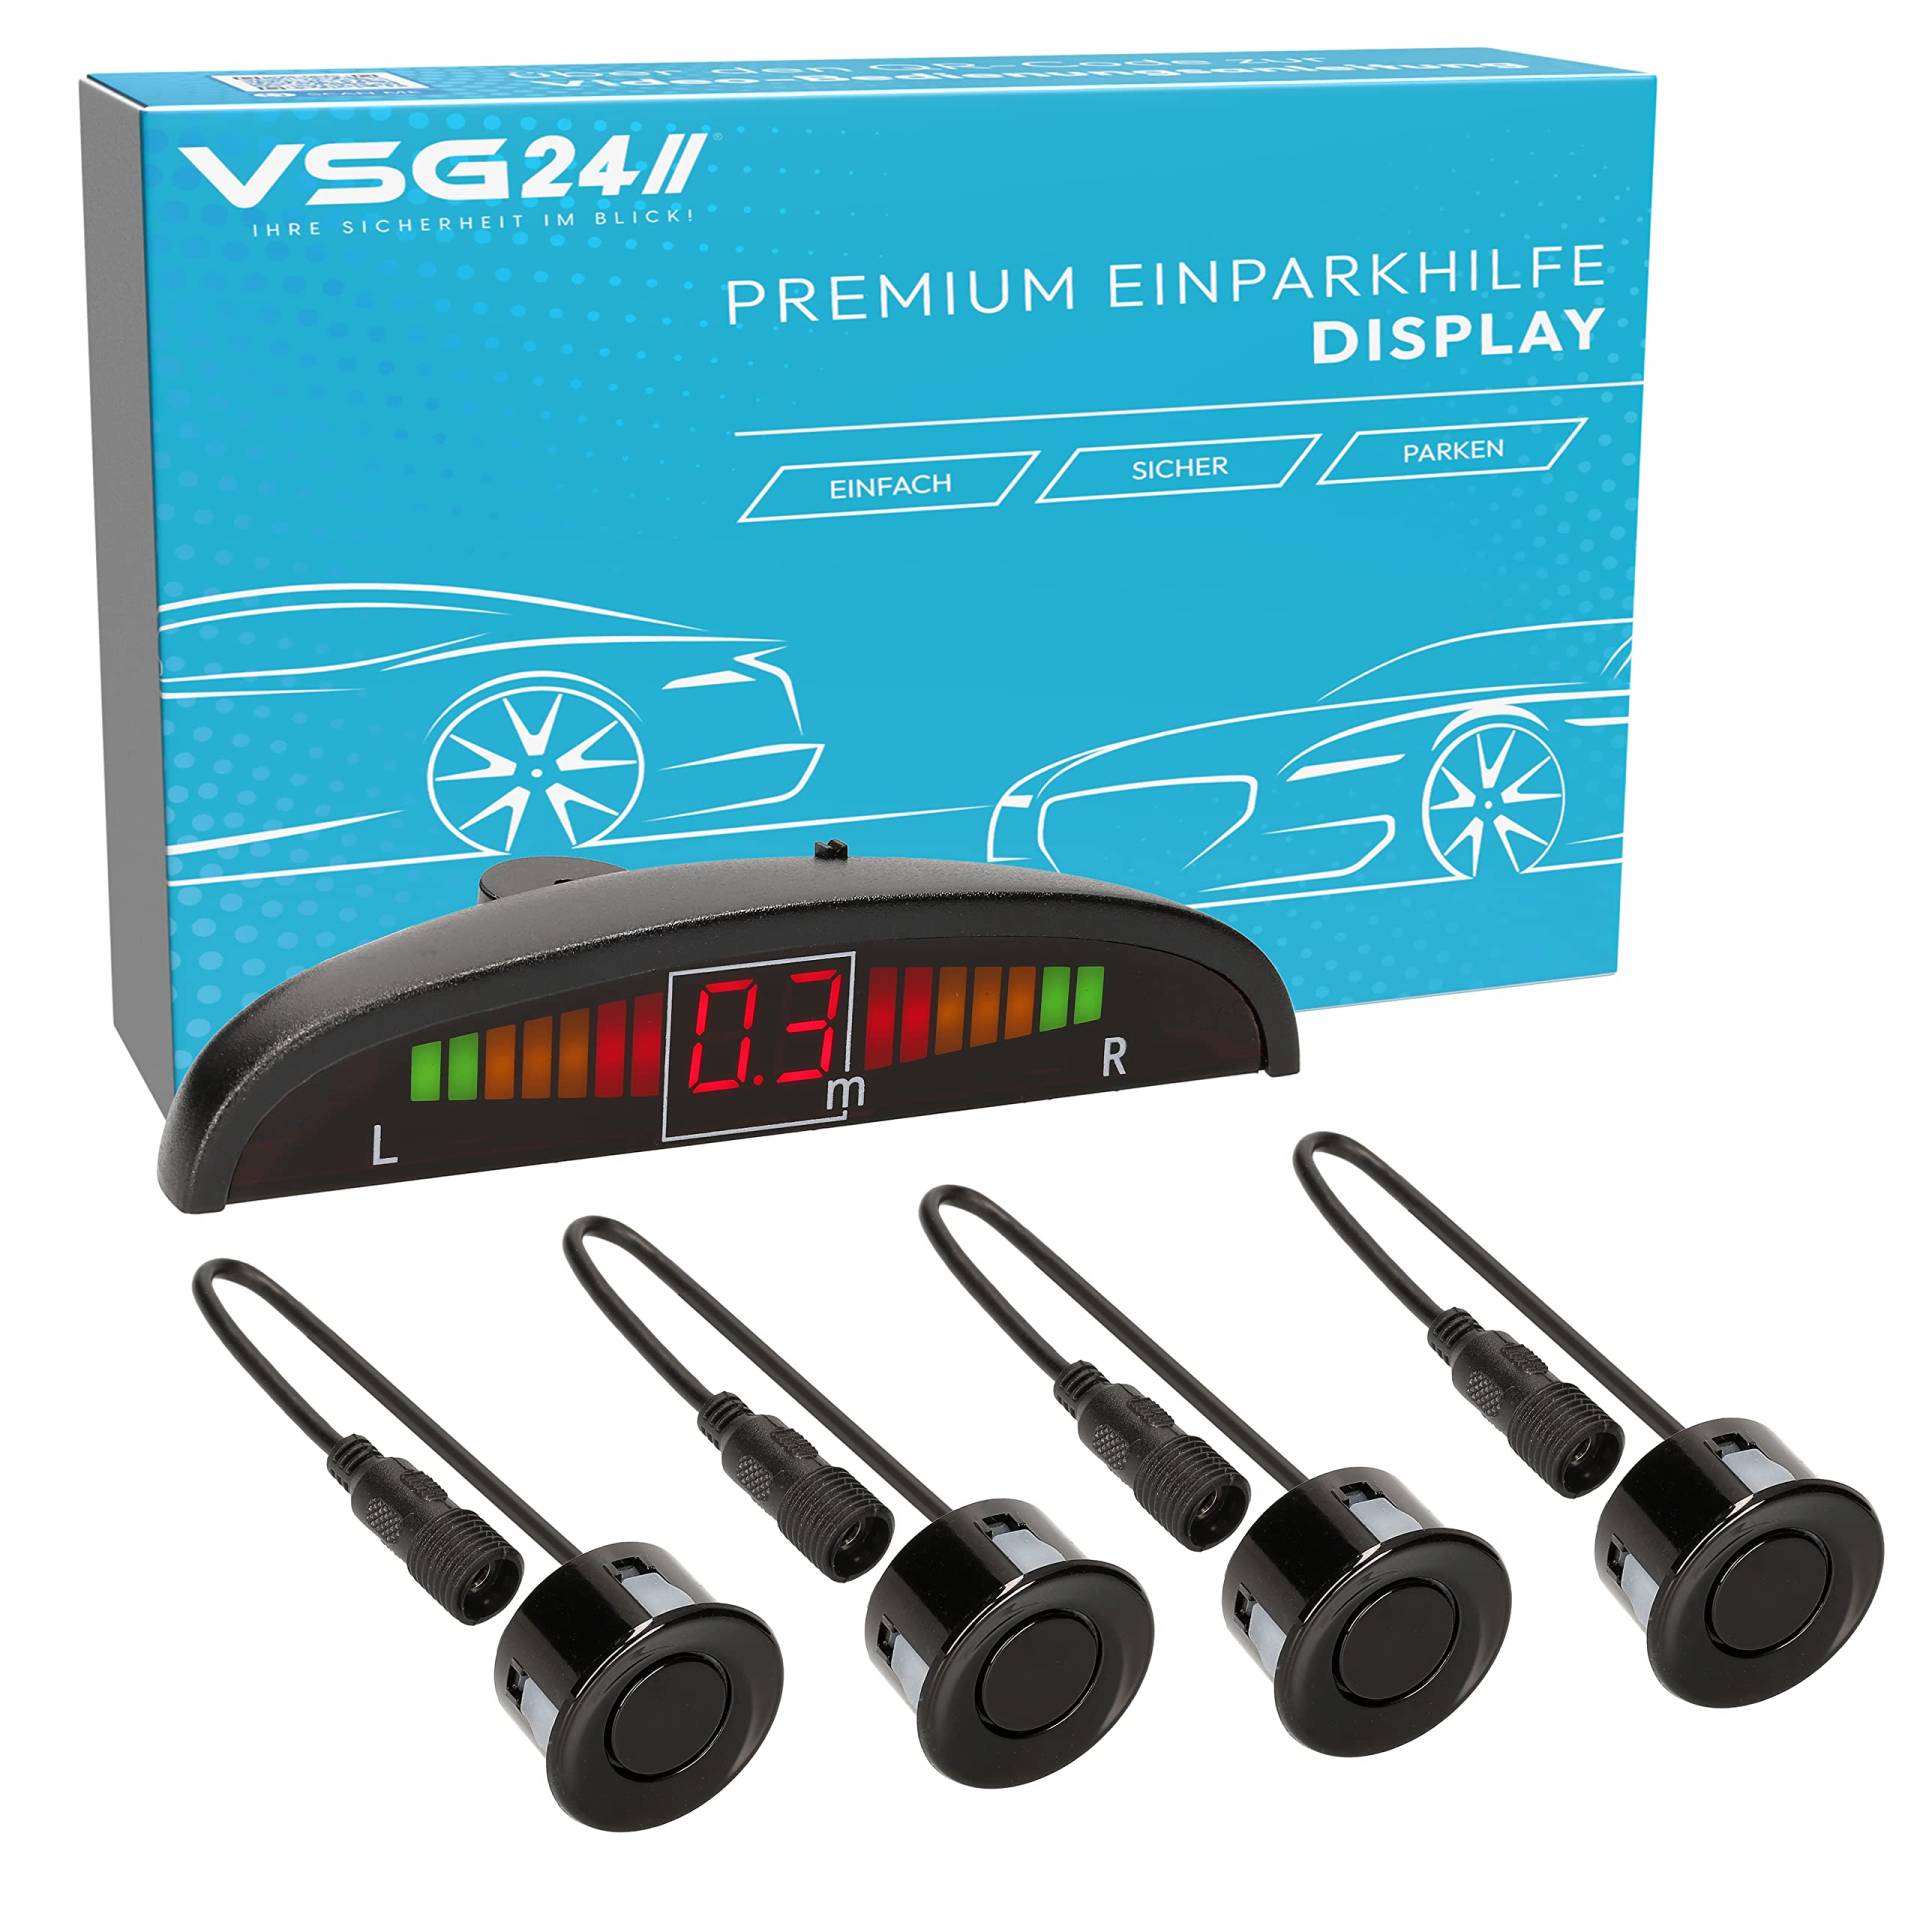 VSG24 Premium Einparkhilfe hinten mit Display zum nachrüsten am Auto, PDC Parksensoren hinten mit Stecksystem für einfachste Montage - 4 Rückfahrwarner Sensoren Parkhilfe Nachrüstsatz Schwarz von VSG